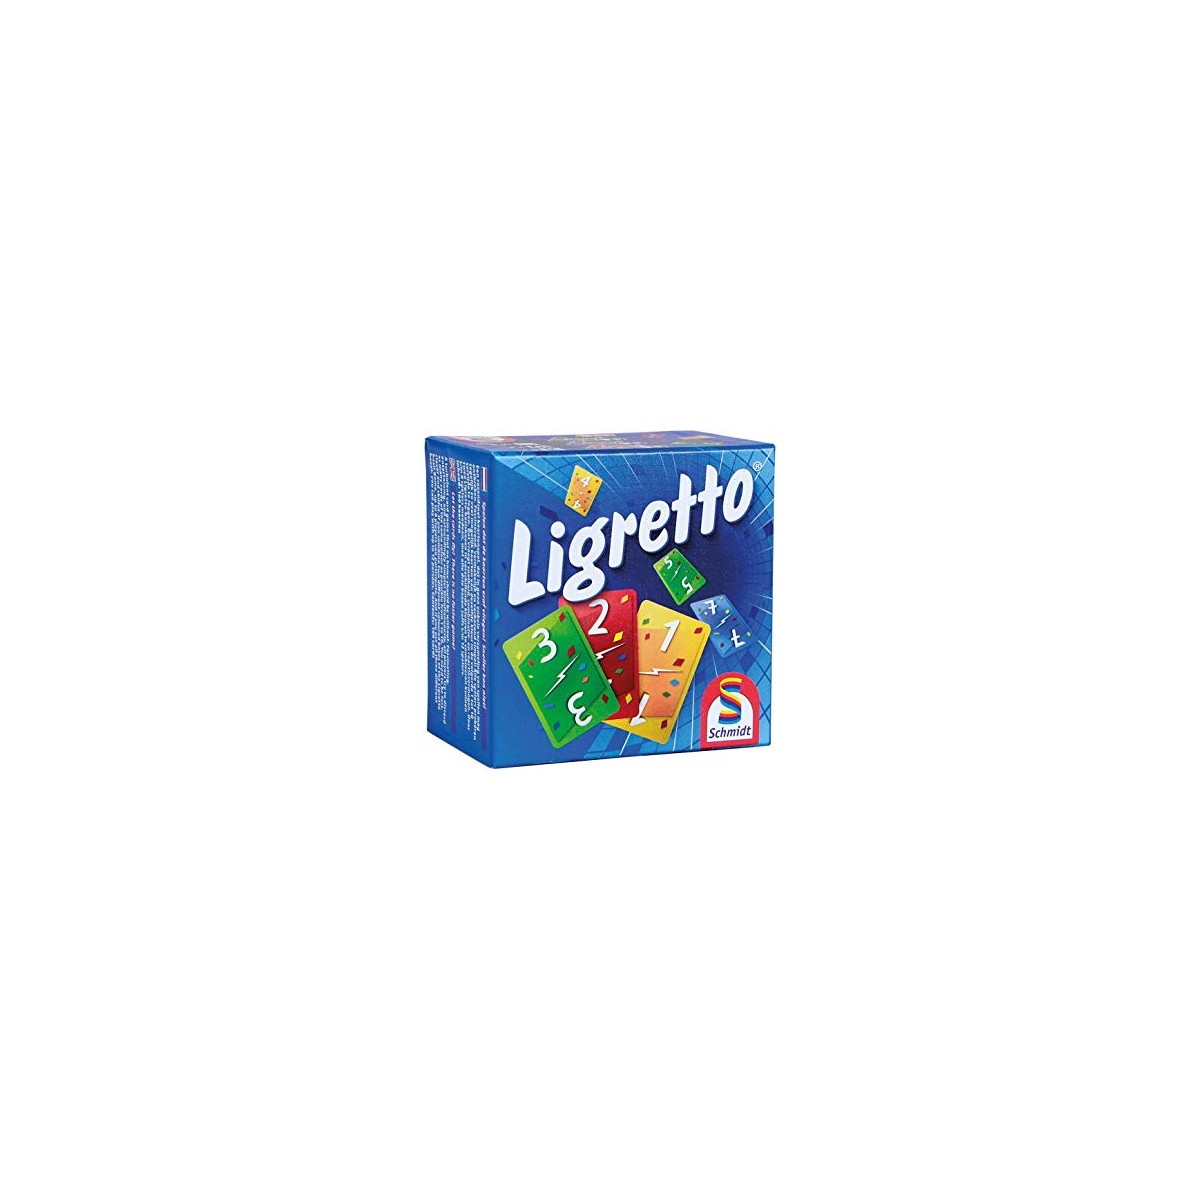 Ligretto Boîte bleue - Observation / Rapidité - Pour les 8 ans - Adultes -  Jeux de société